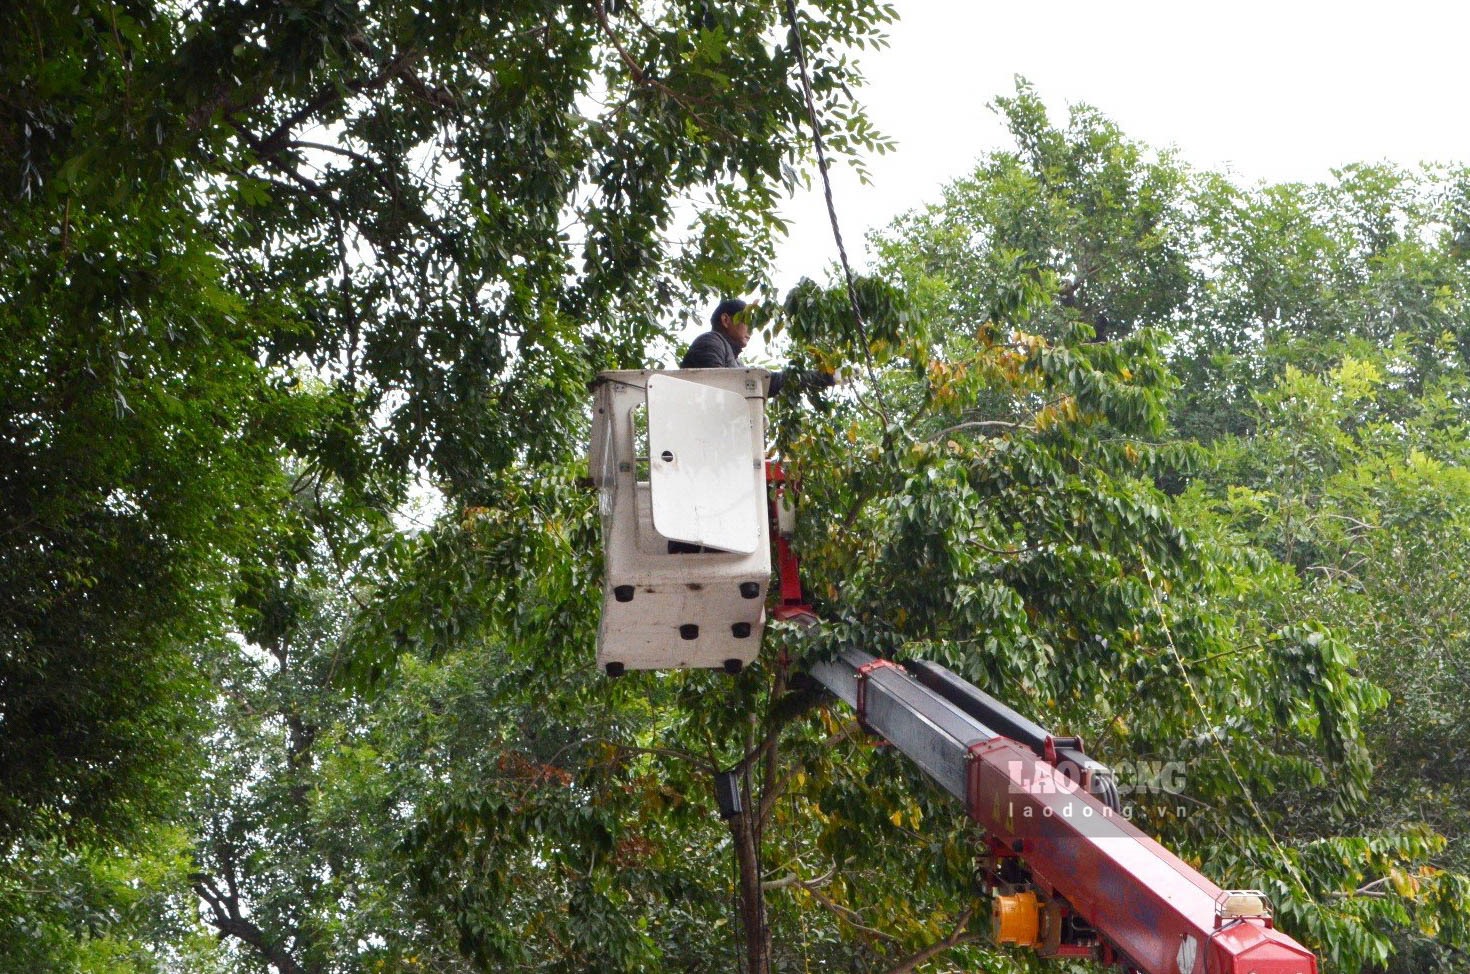 Công nhân đang tiến hành lắp đặt hệ thống đèn nháy cạnh khu vực vườn cây.